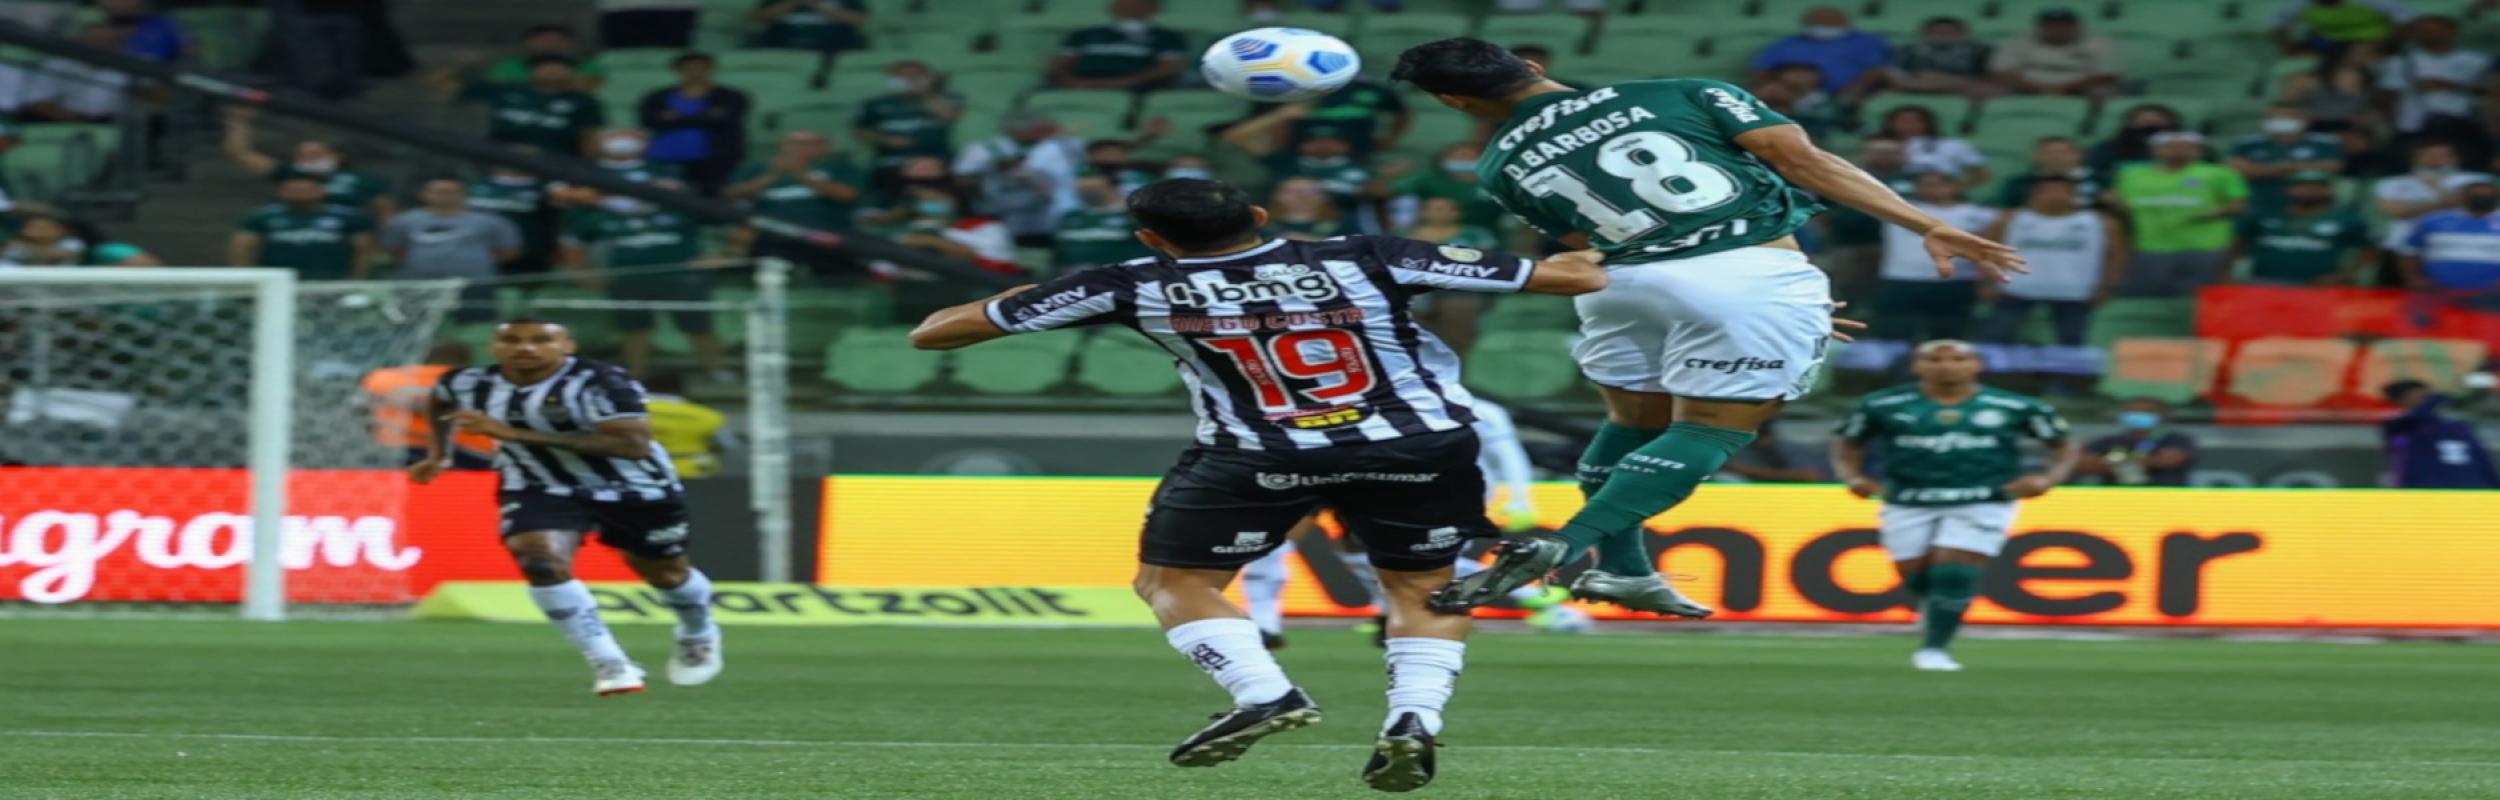 Παλμέιρας - Ατλ. Μινέιρο, Palmeiras vs. Atlético Mineiro